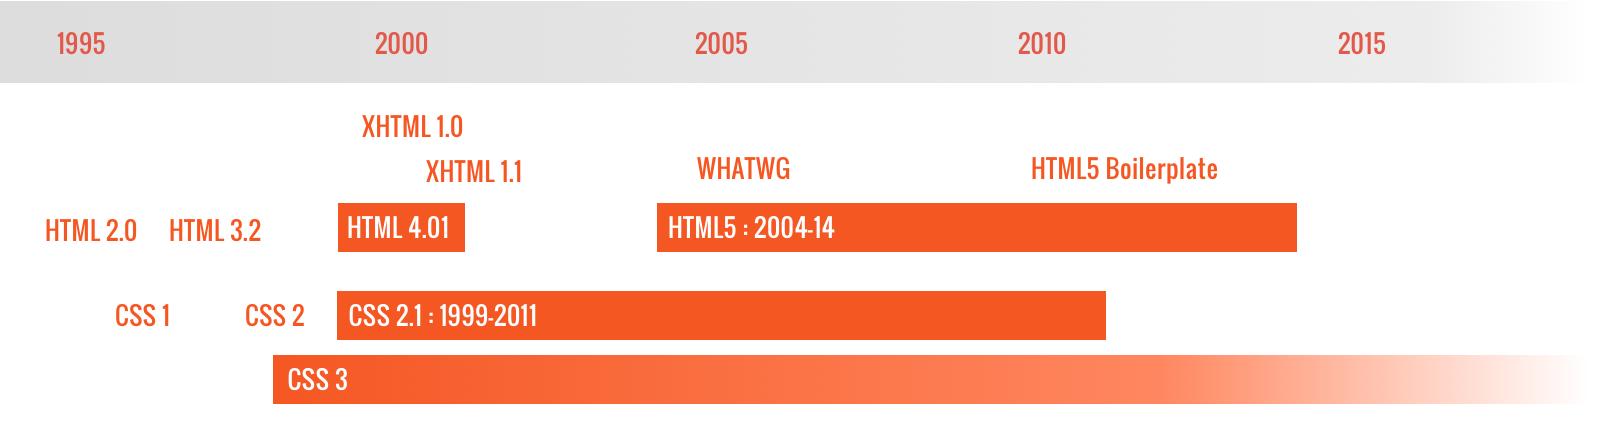 L’évolution des standards HTML et CSS entre 1995 et 2015